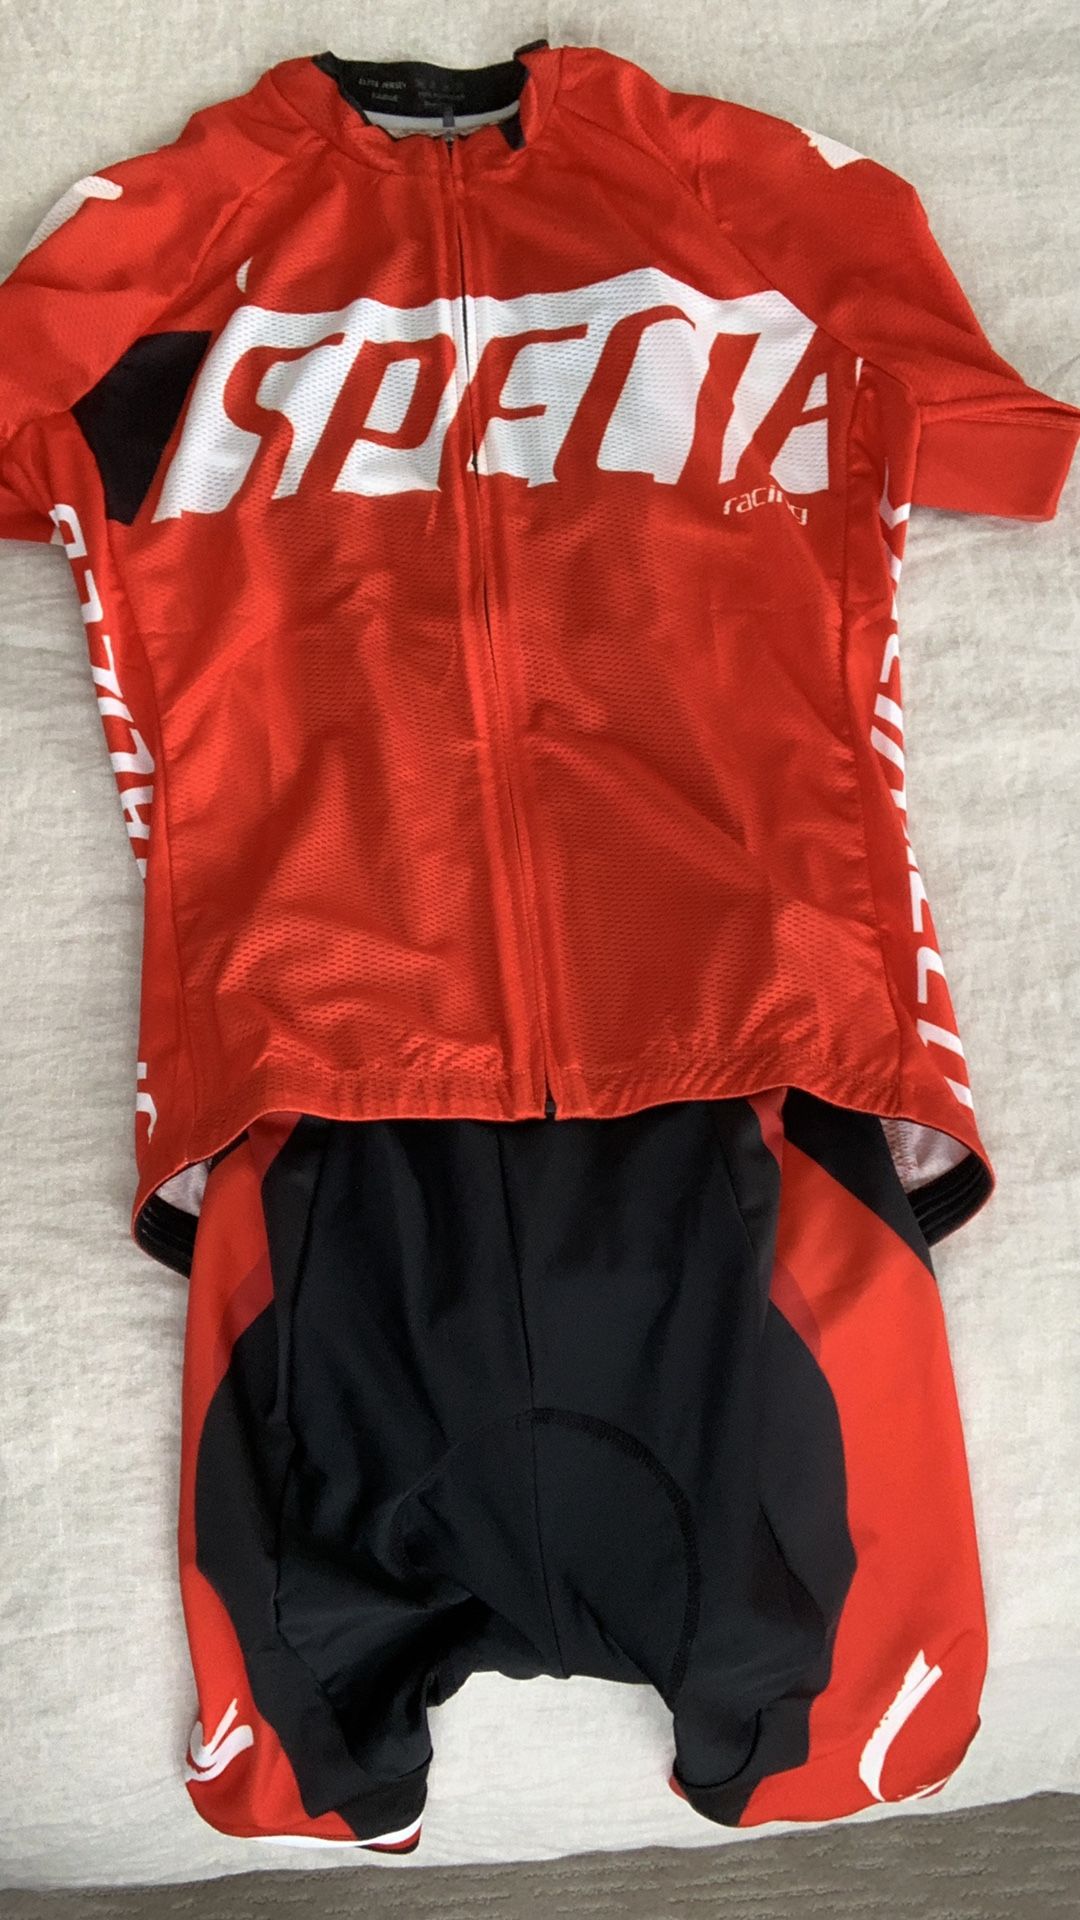 Pro Elite Cycling Kit 